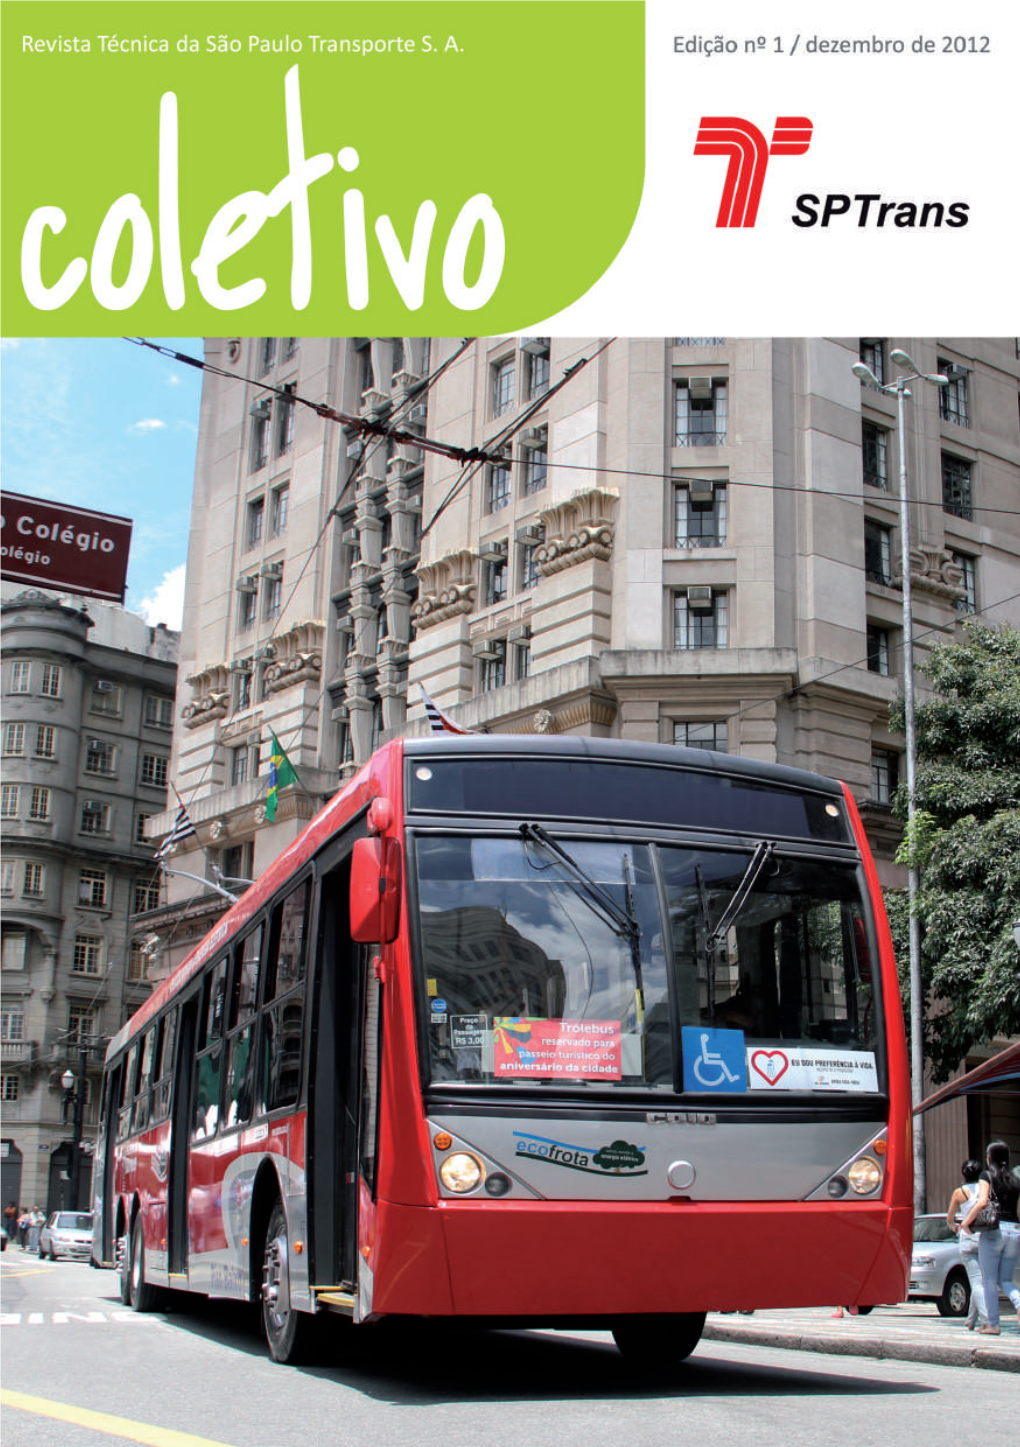 A São Paulo Transporte – Sptrans